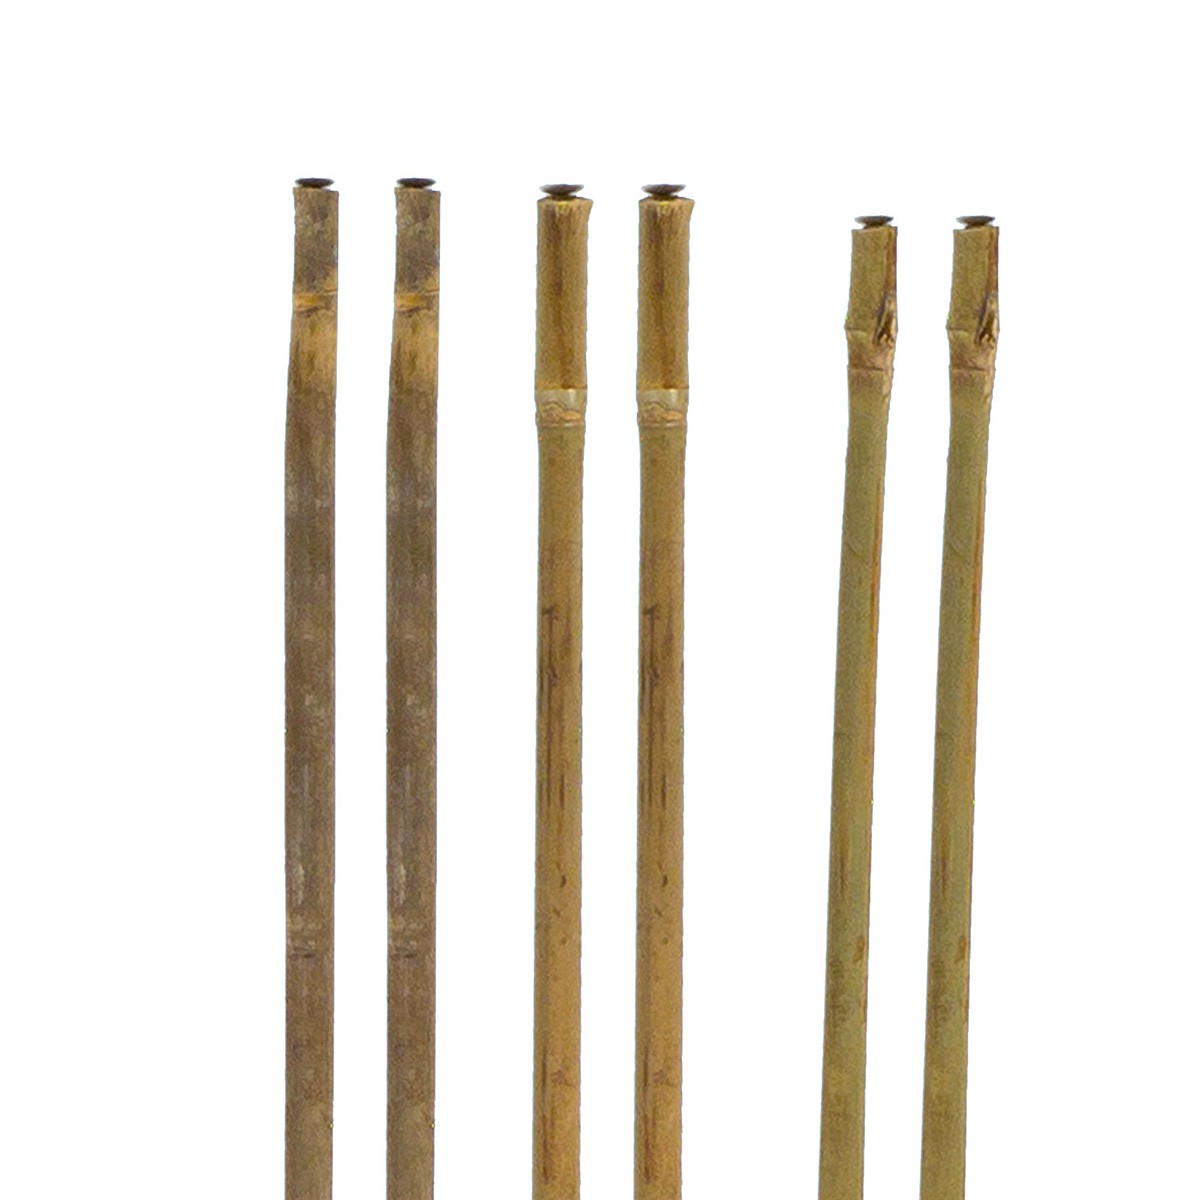 Canna di Bamboo per Orto Agricoltura - Stocker 210 cm